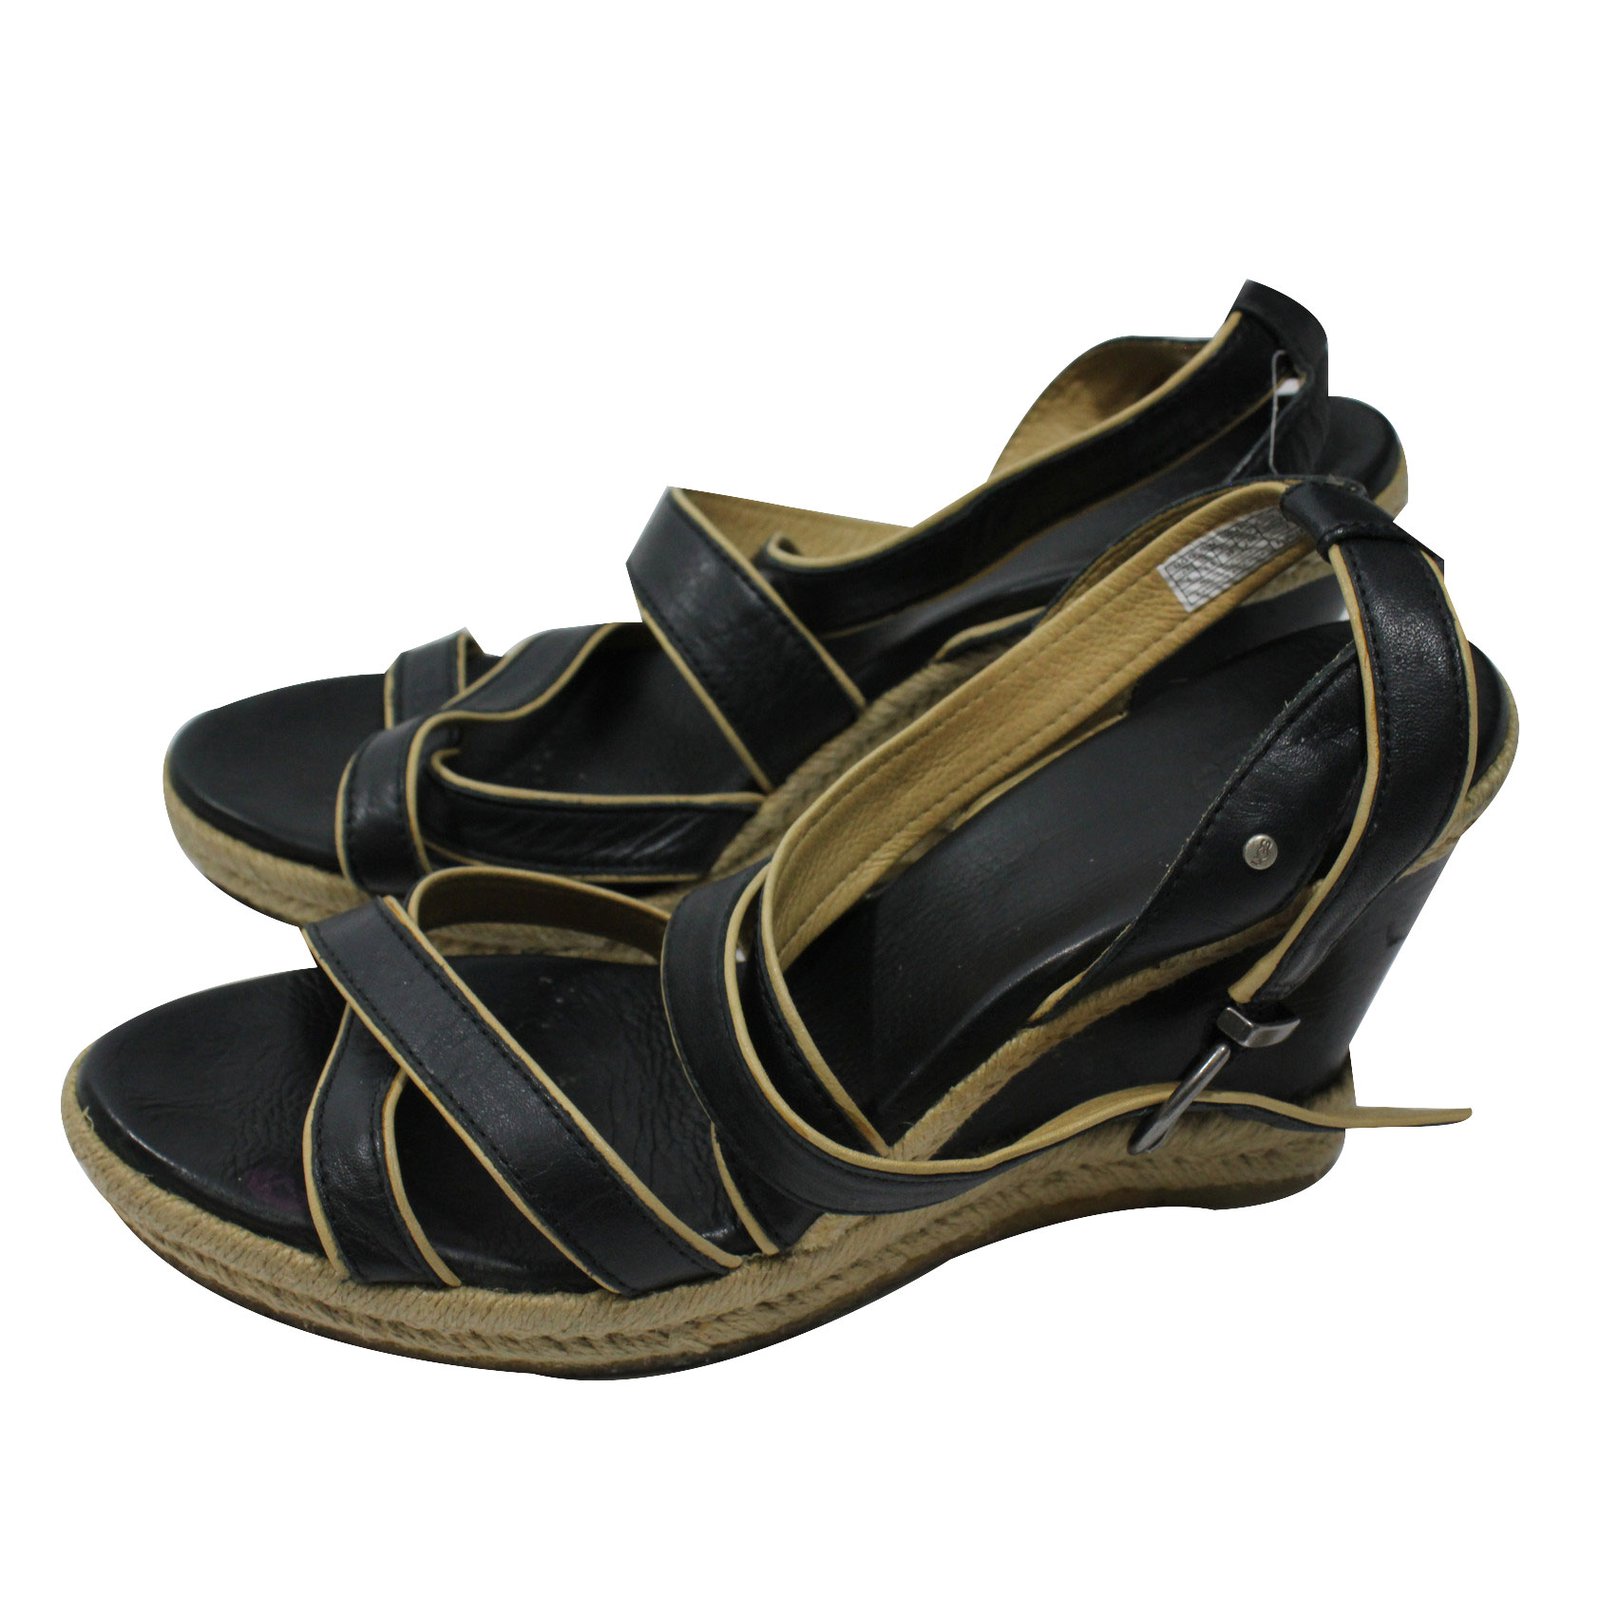 ugg black wedge sandals